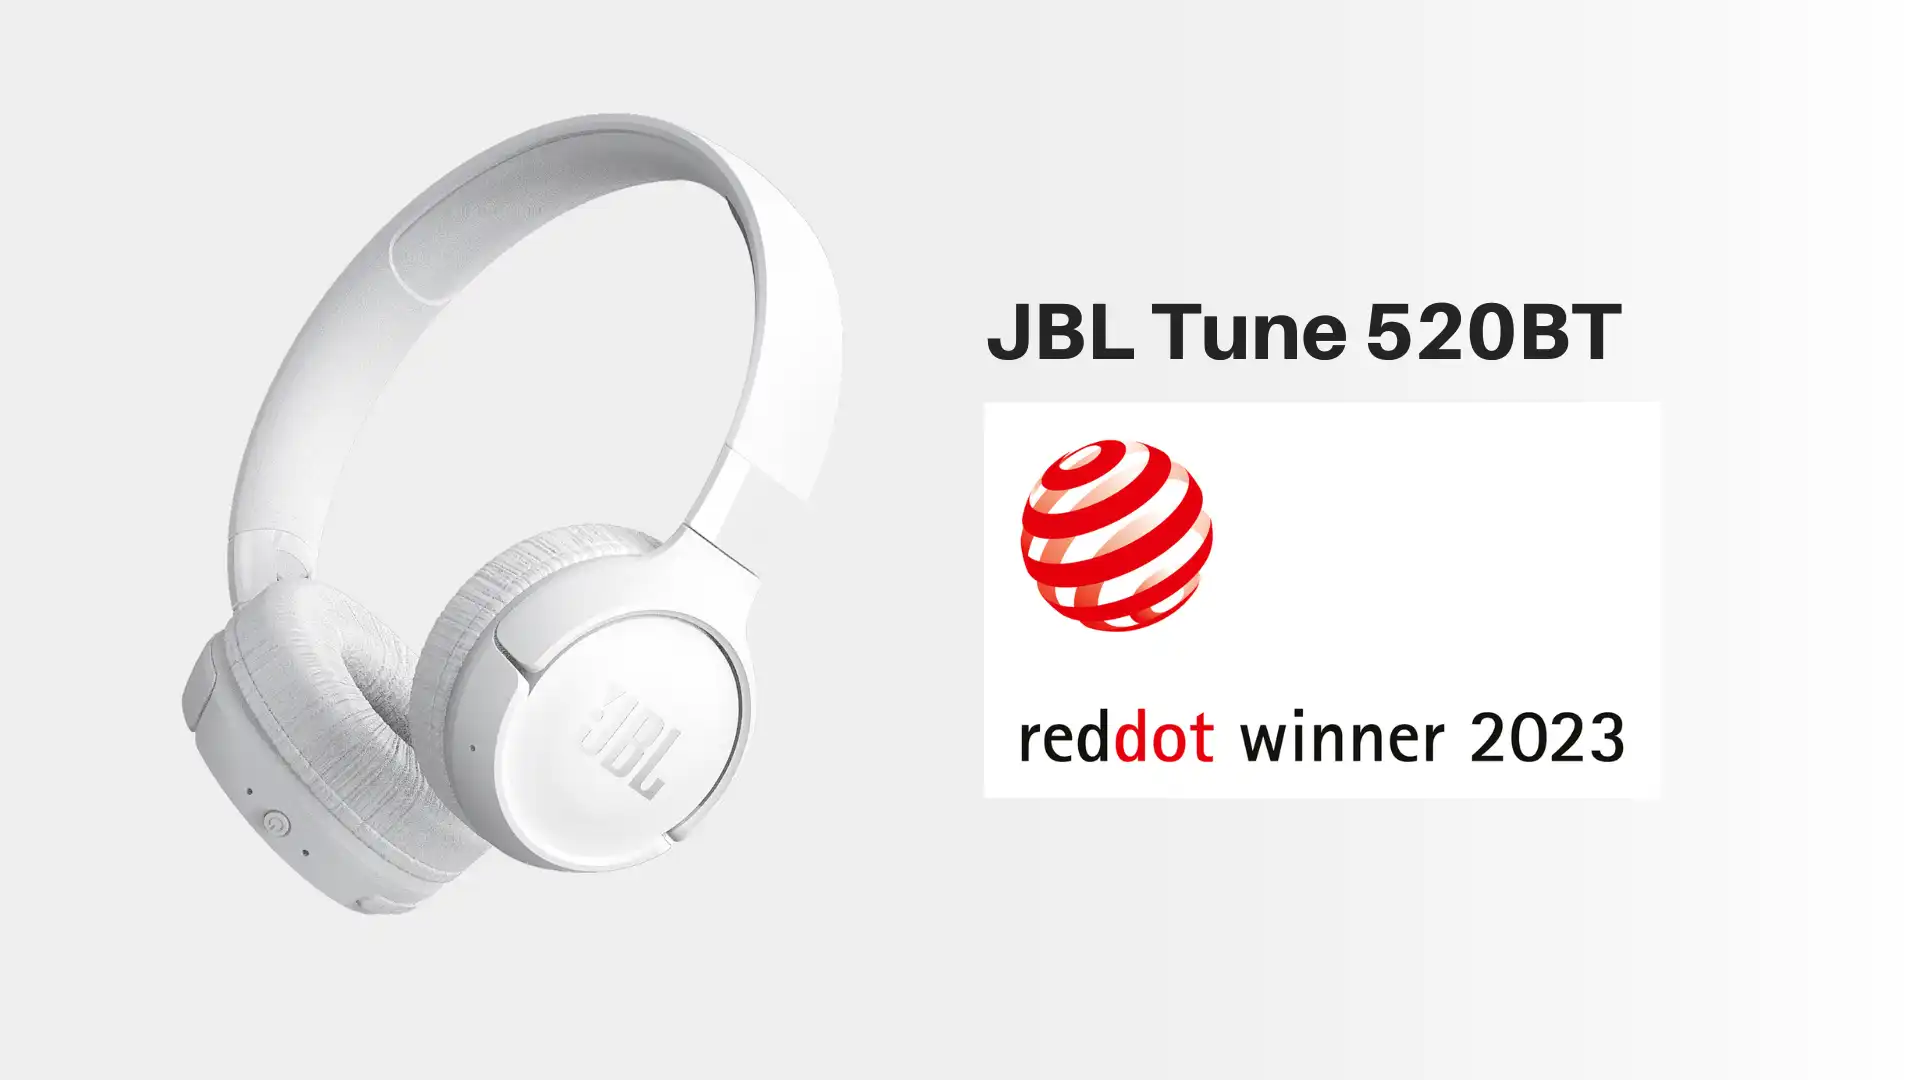 jbl tune 520bt reddot awards 2023